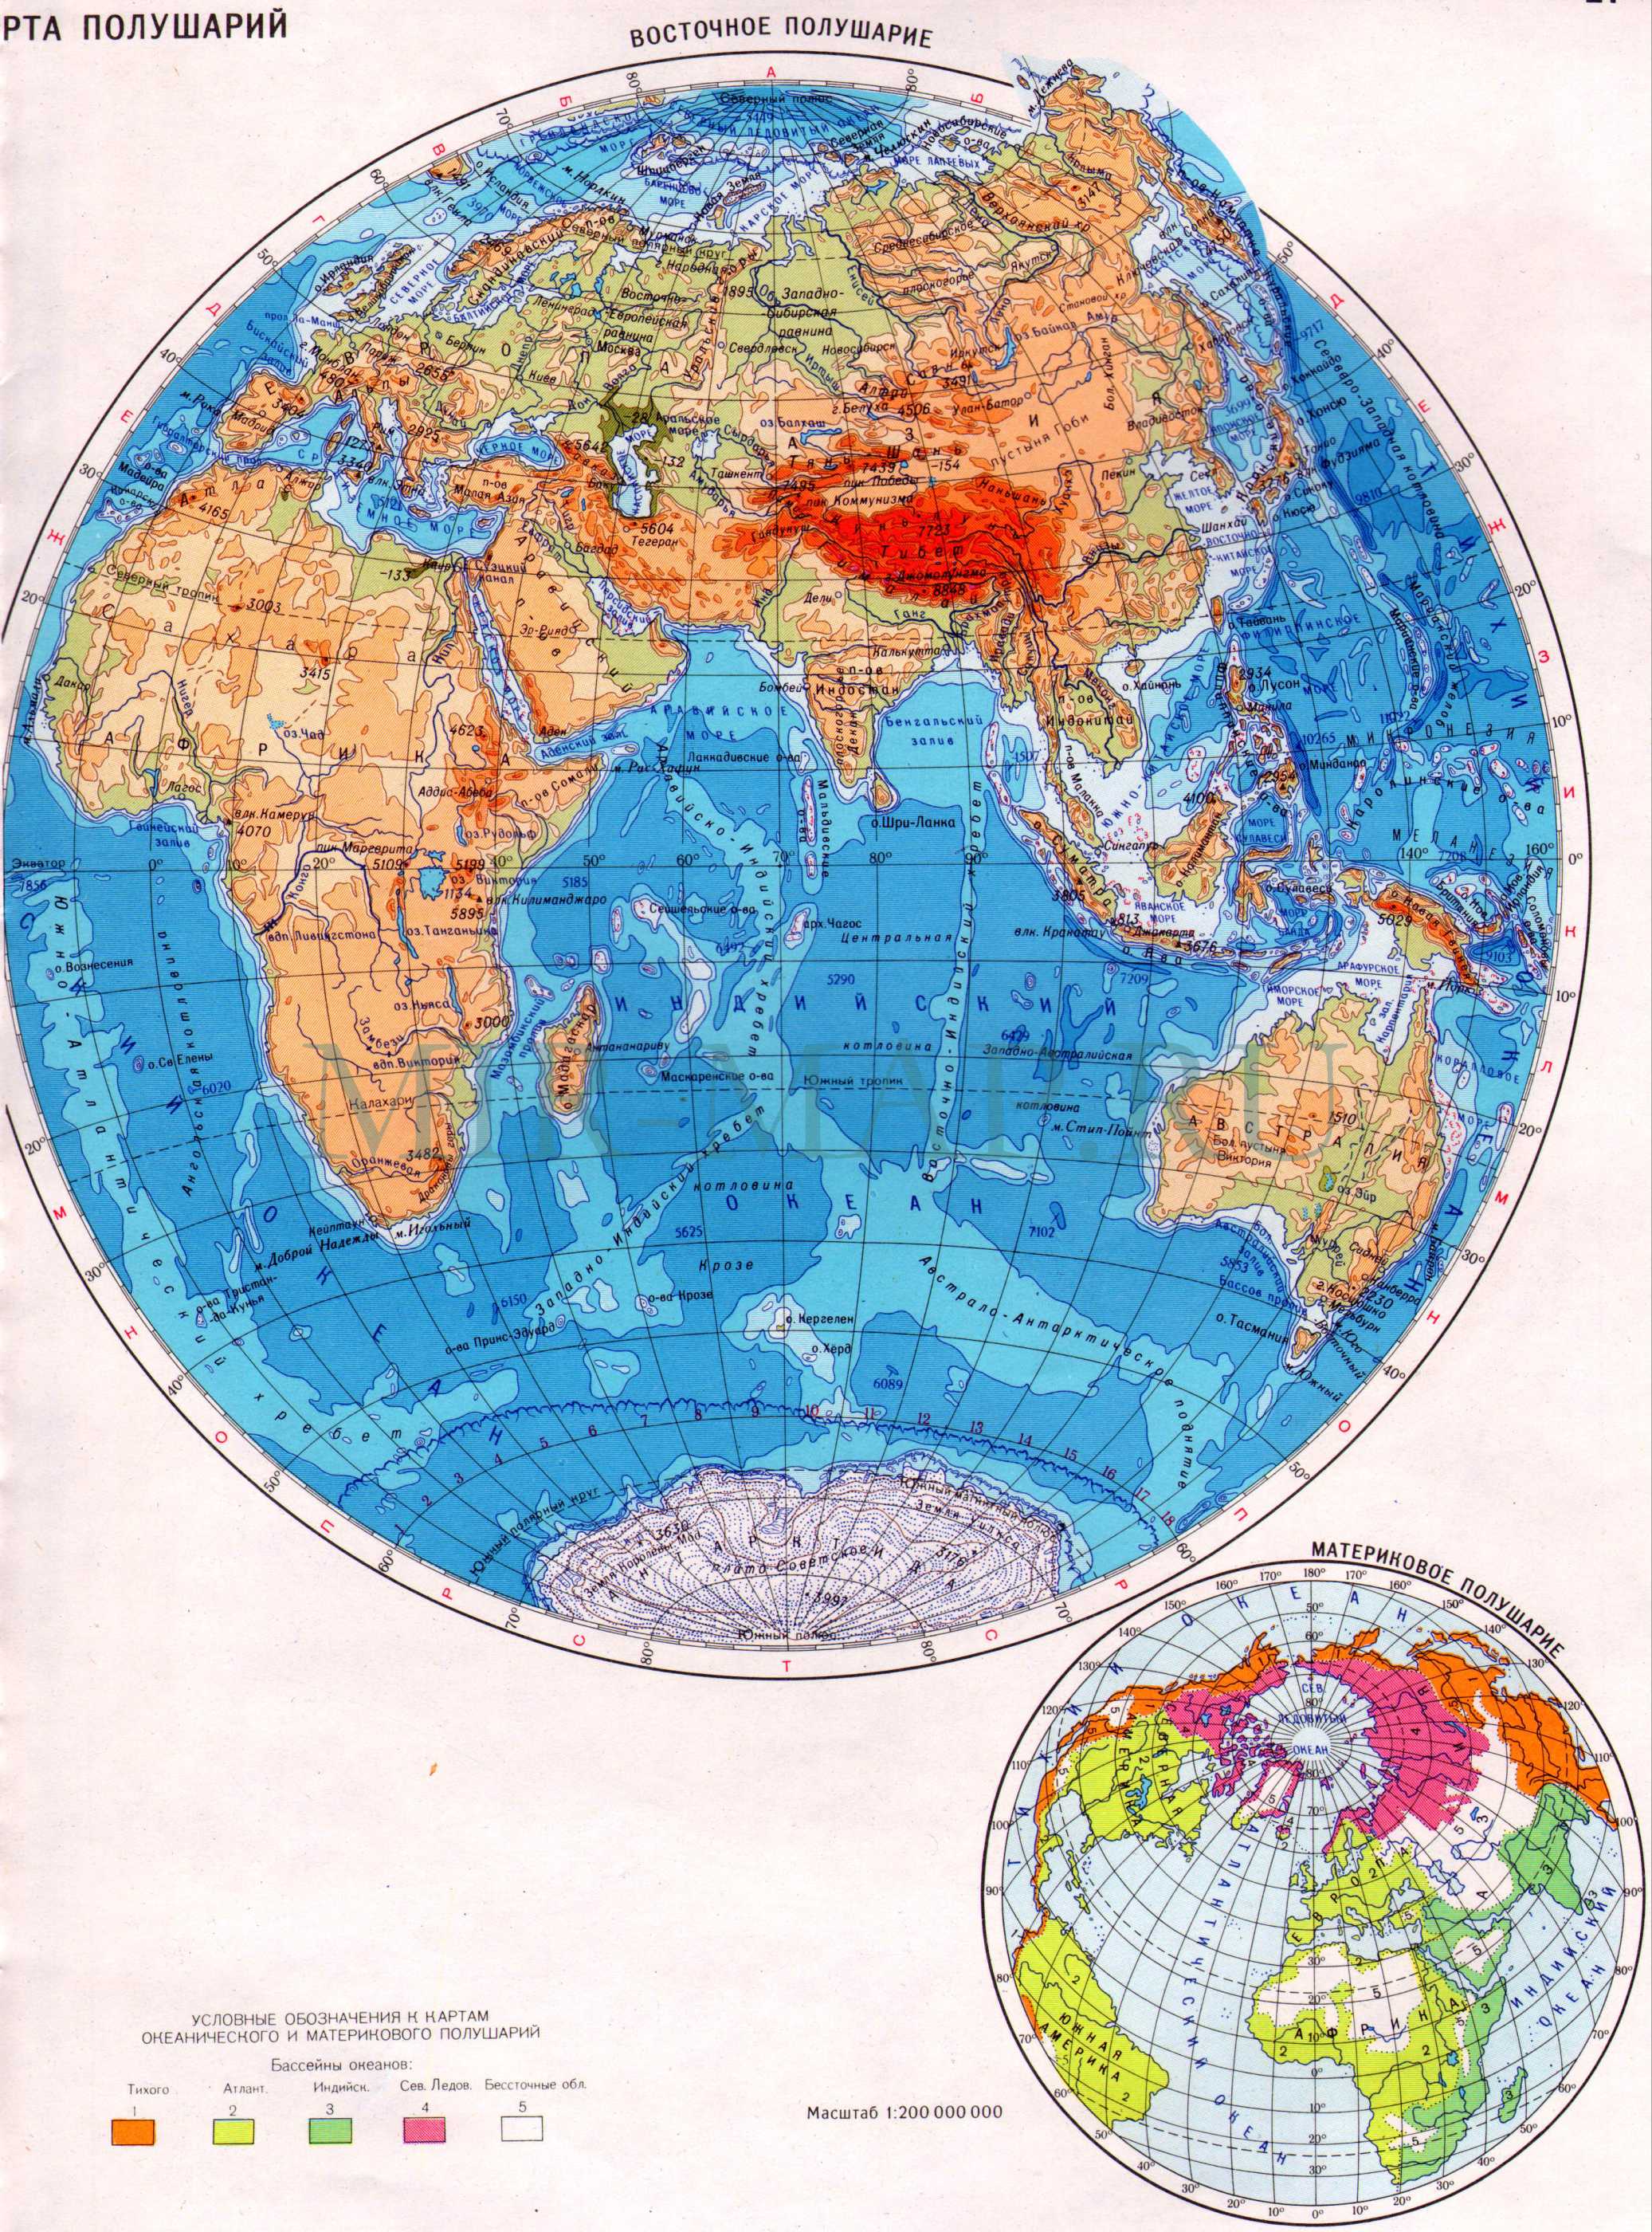 Карта восточного полушария. Физическая карта восточного полушария Земли -материковое полушарие планеты, A0 -